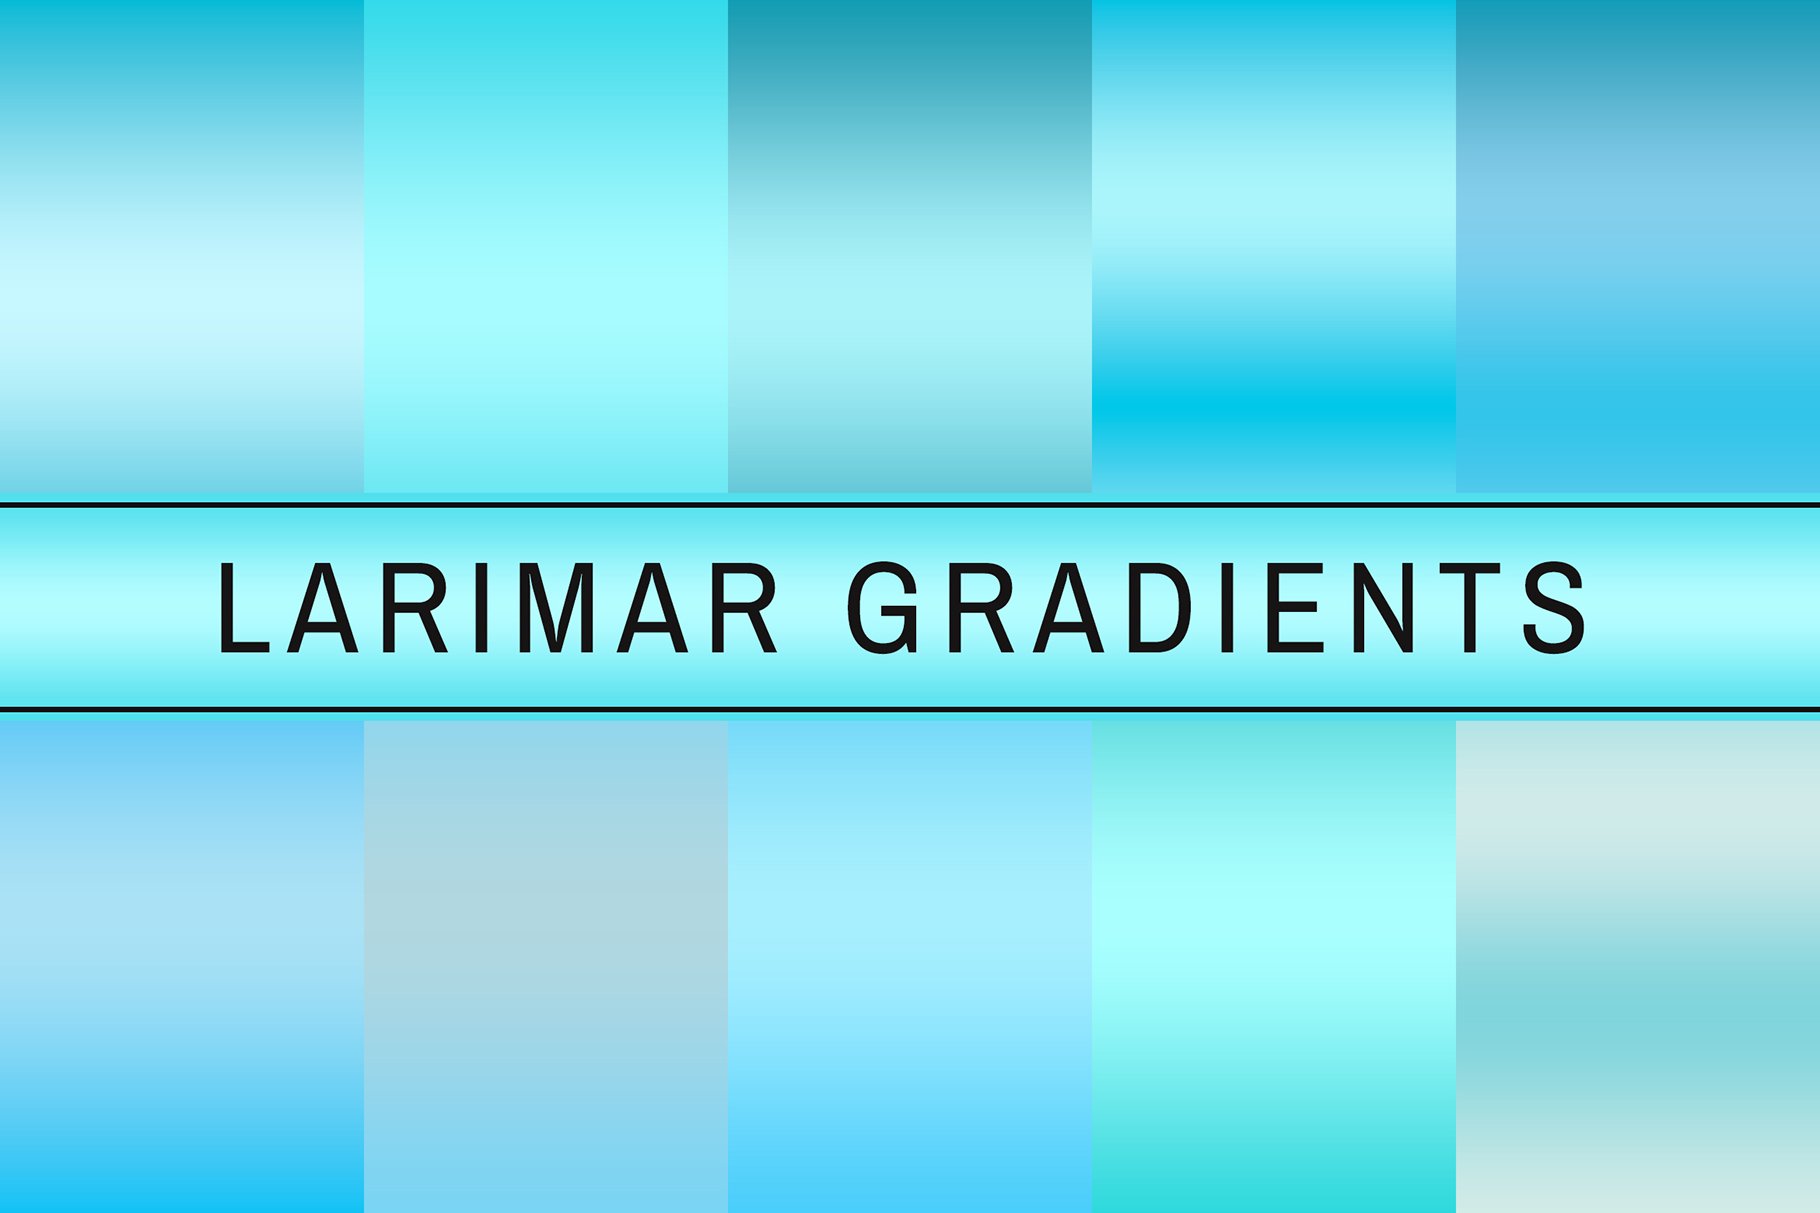 Larimar Gradients cover image.